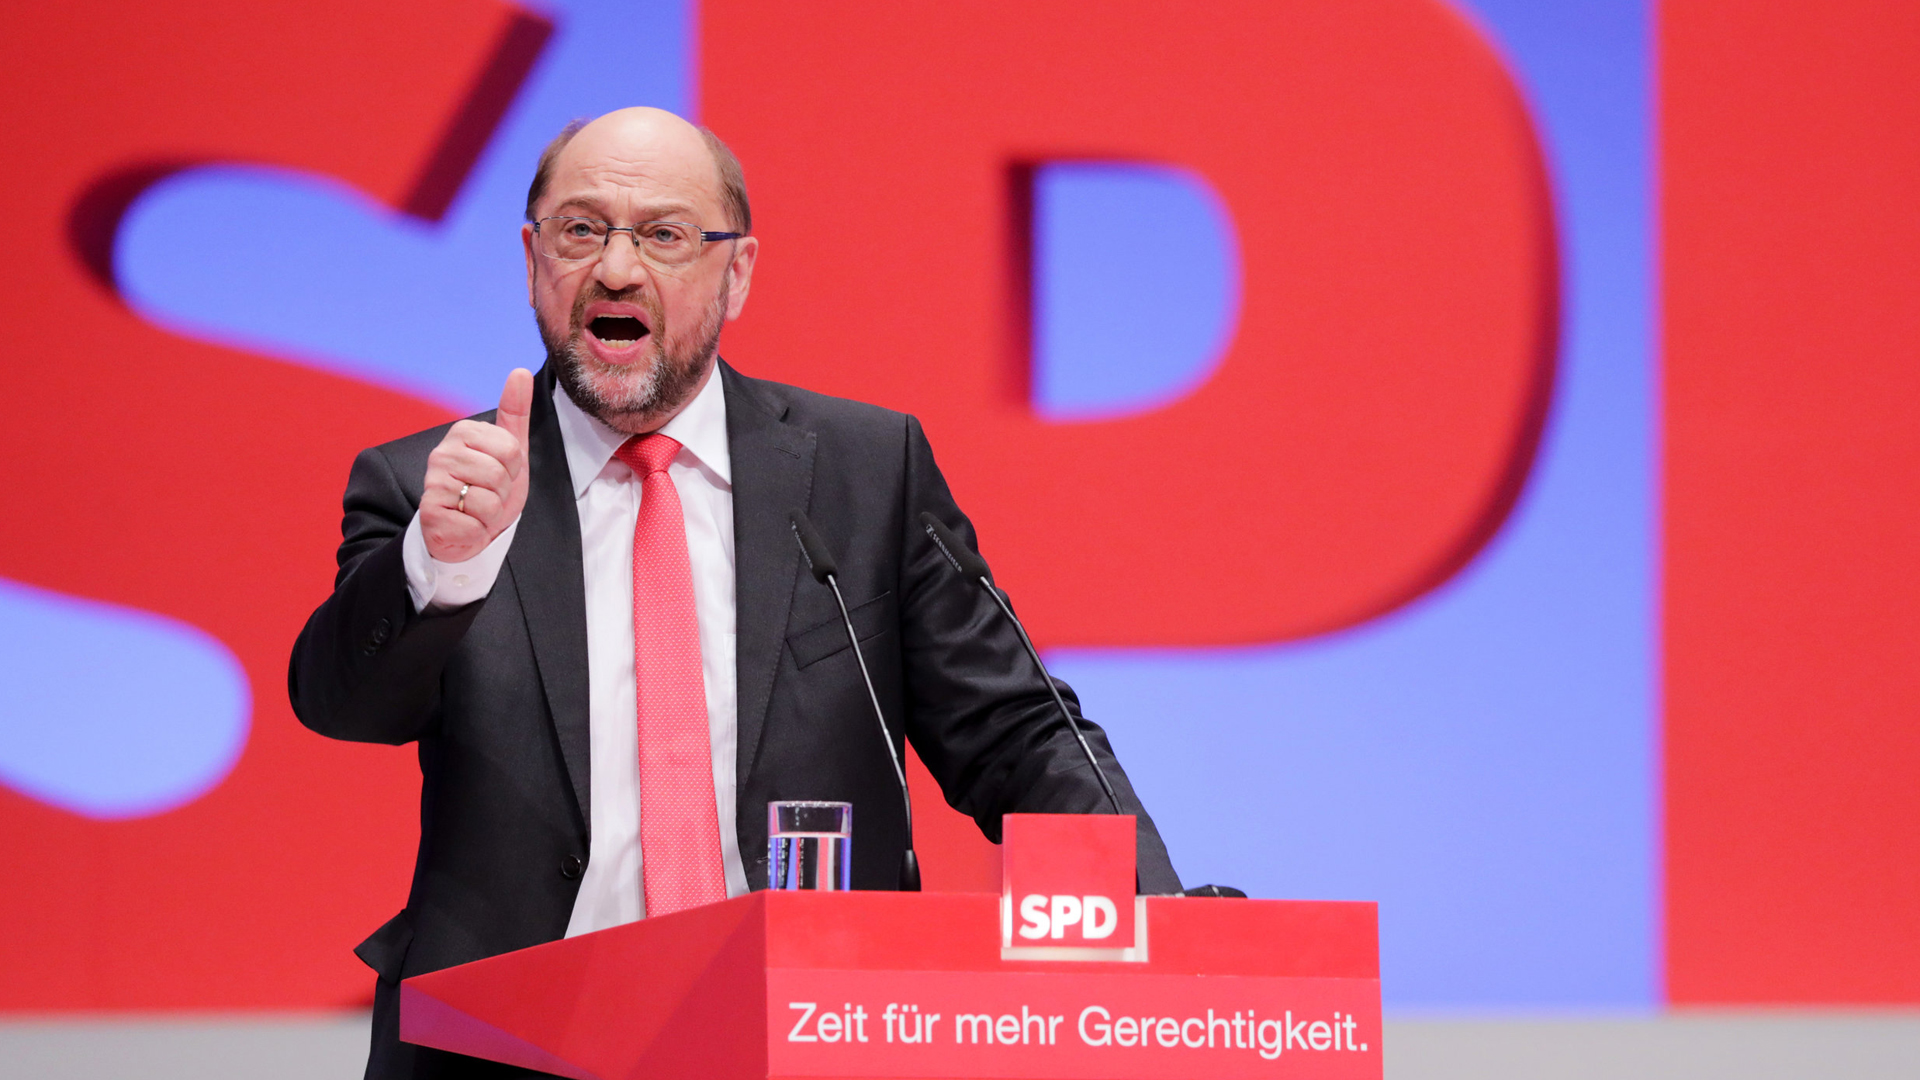 SPD-Parteitag in Dortmund | dpa